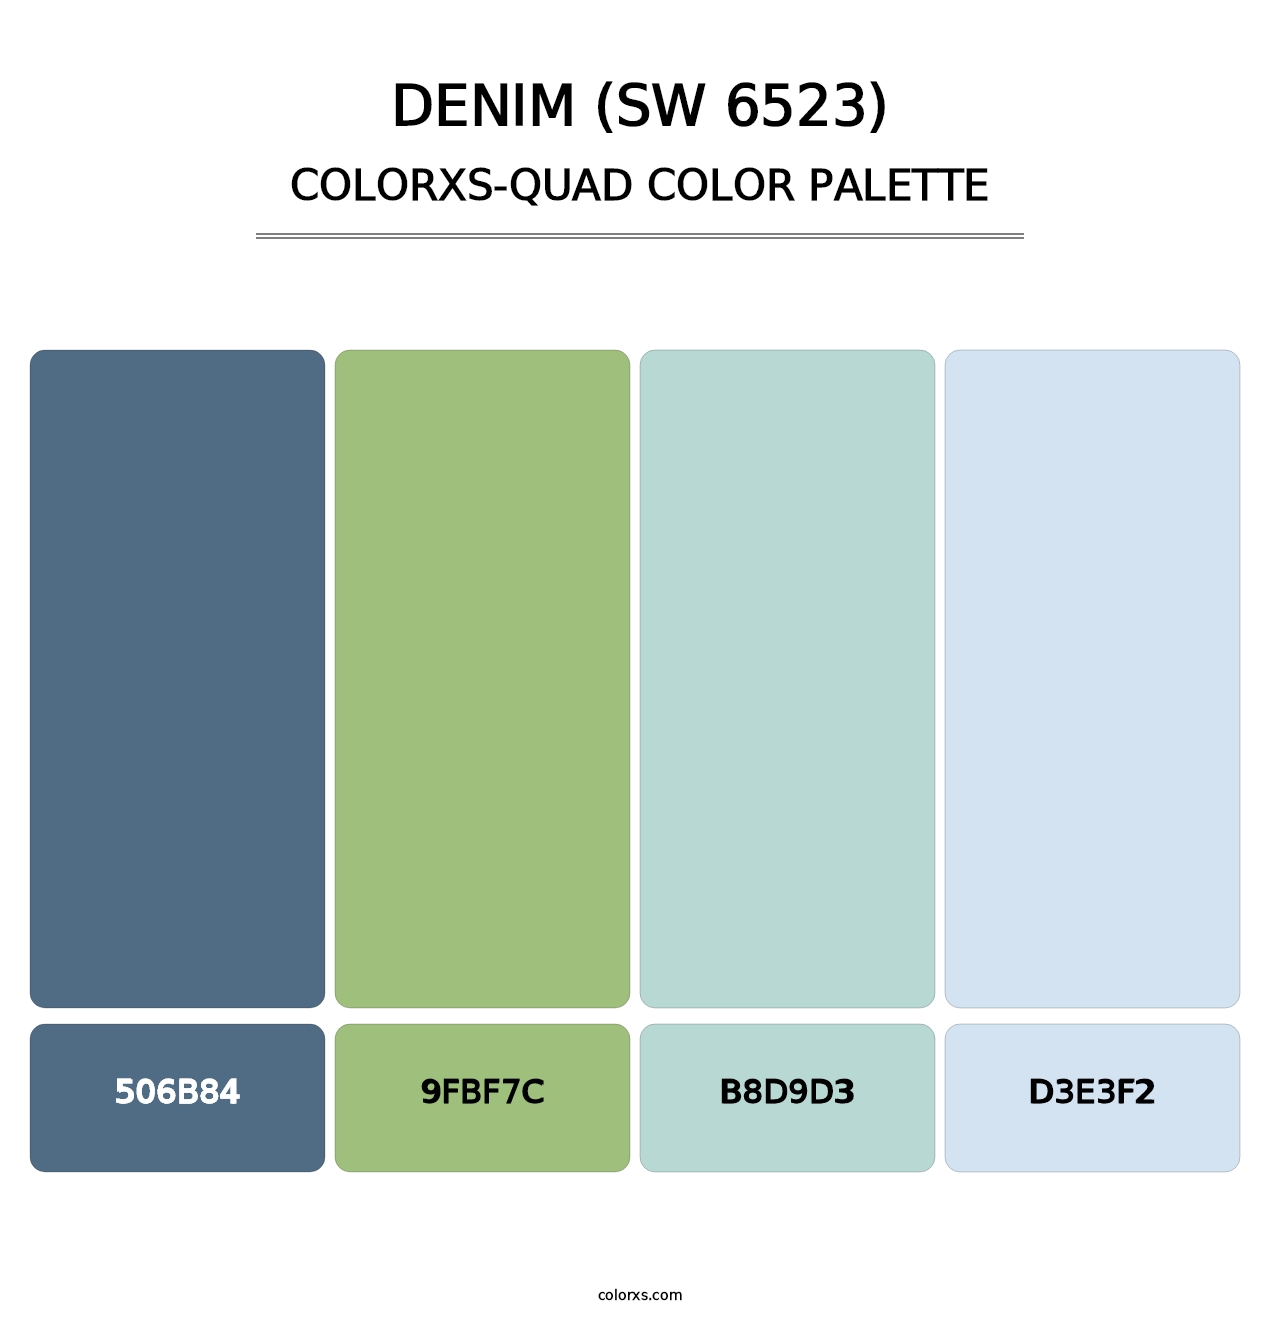 Denim (SW 6523) - Colorxs Quad Palette